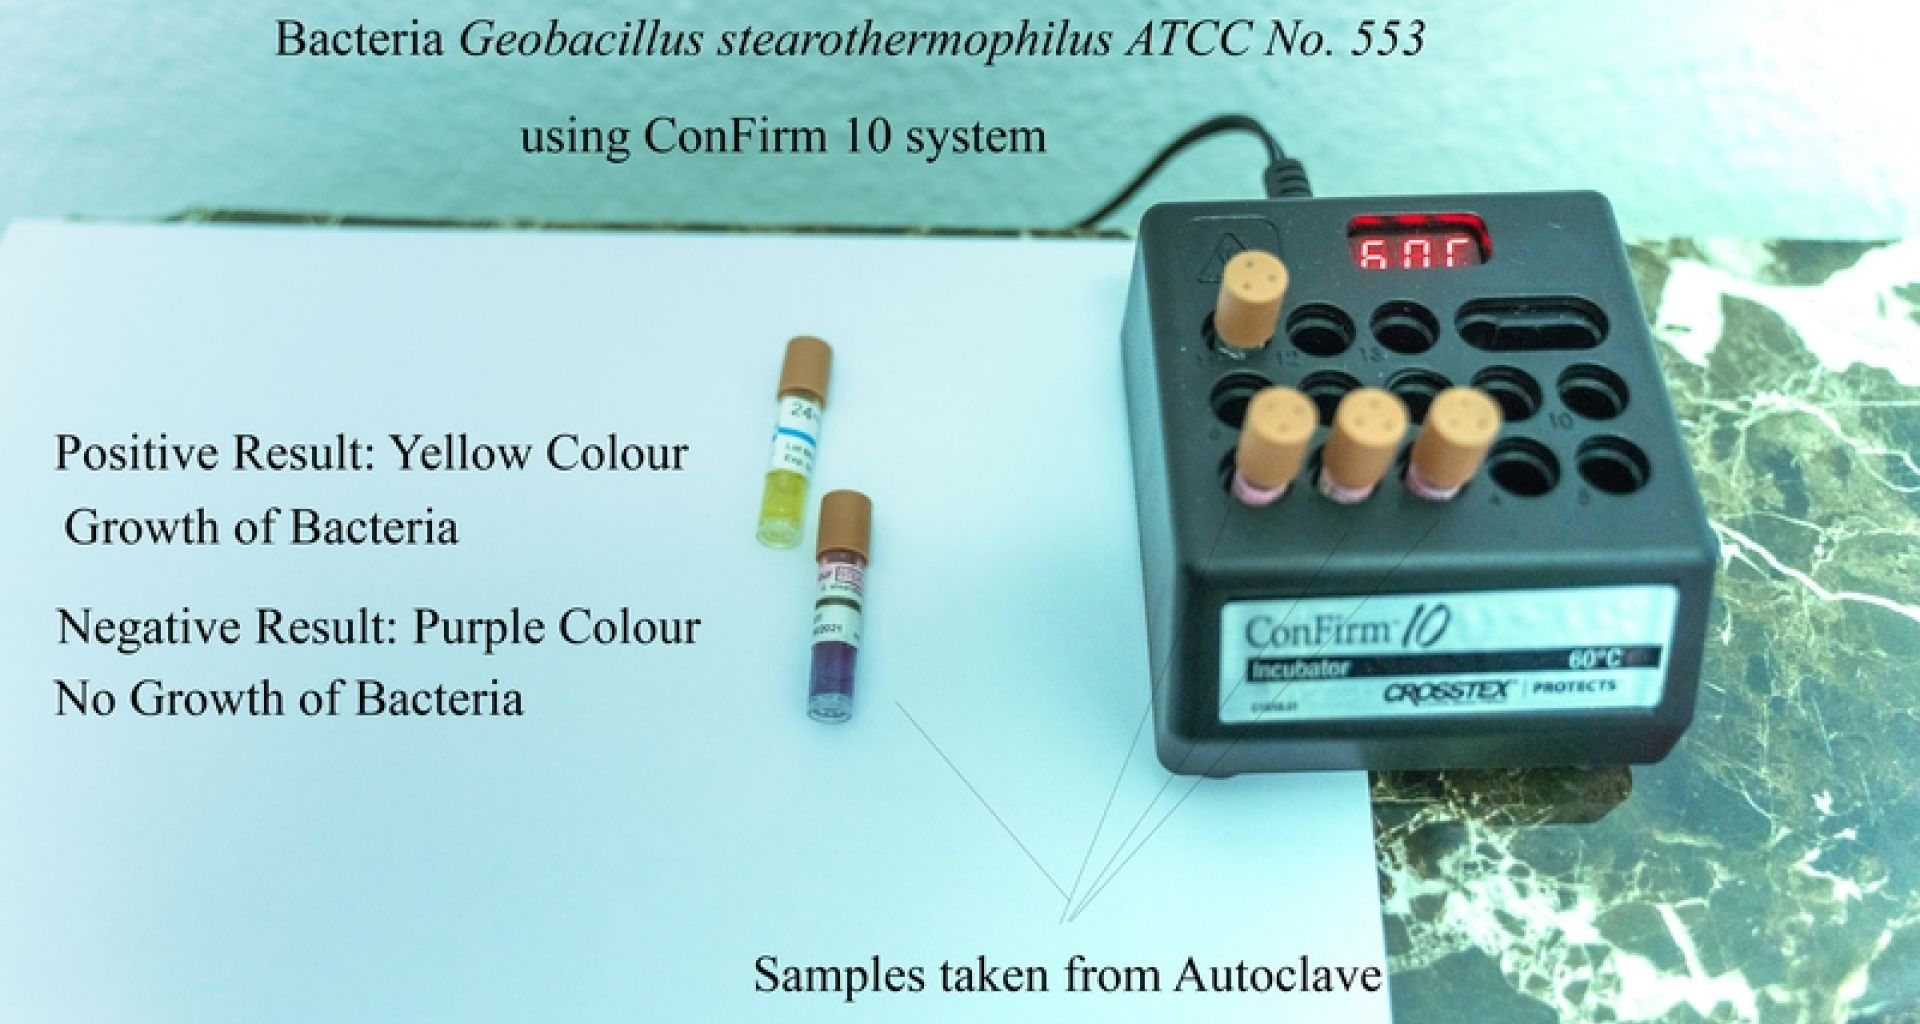 المؤشرات والأختبارات البيولوجية للتحقق من جودة أجهزة الأوتوكلاف المستعملة لتعقيم النفايات الطبية